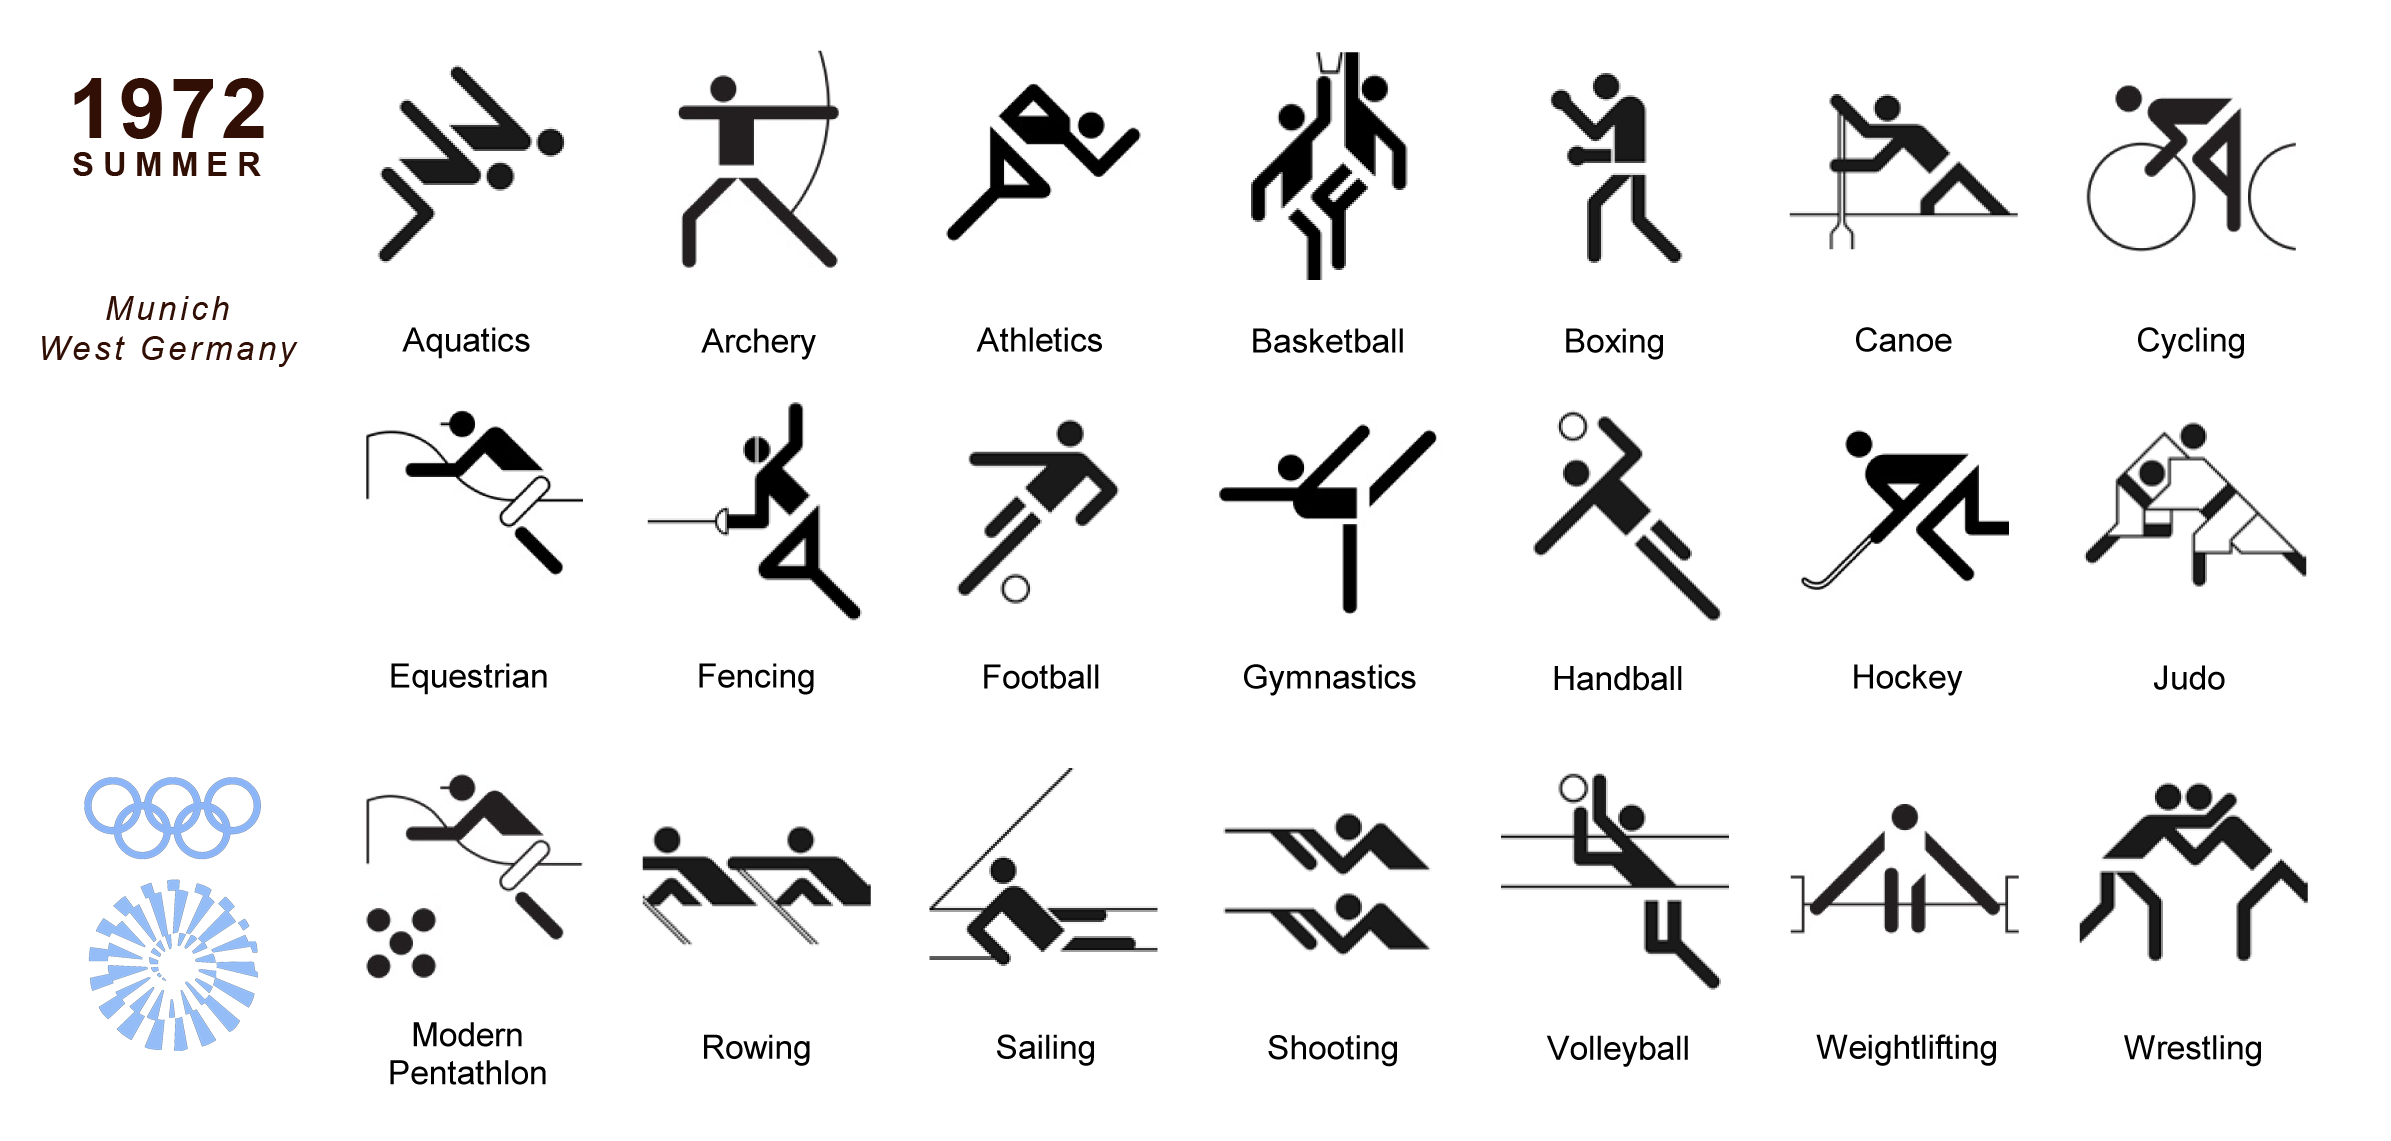 Вид спорта, изображенный на пиктограмме:. Схематические обозначения видов спорта. Пентаграмма Олимпийских видов спорта.